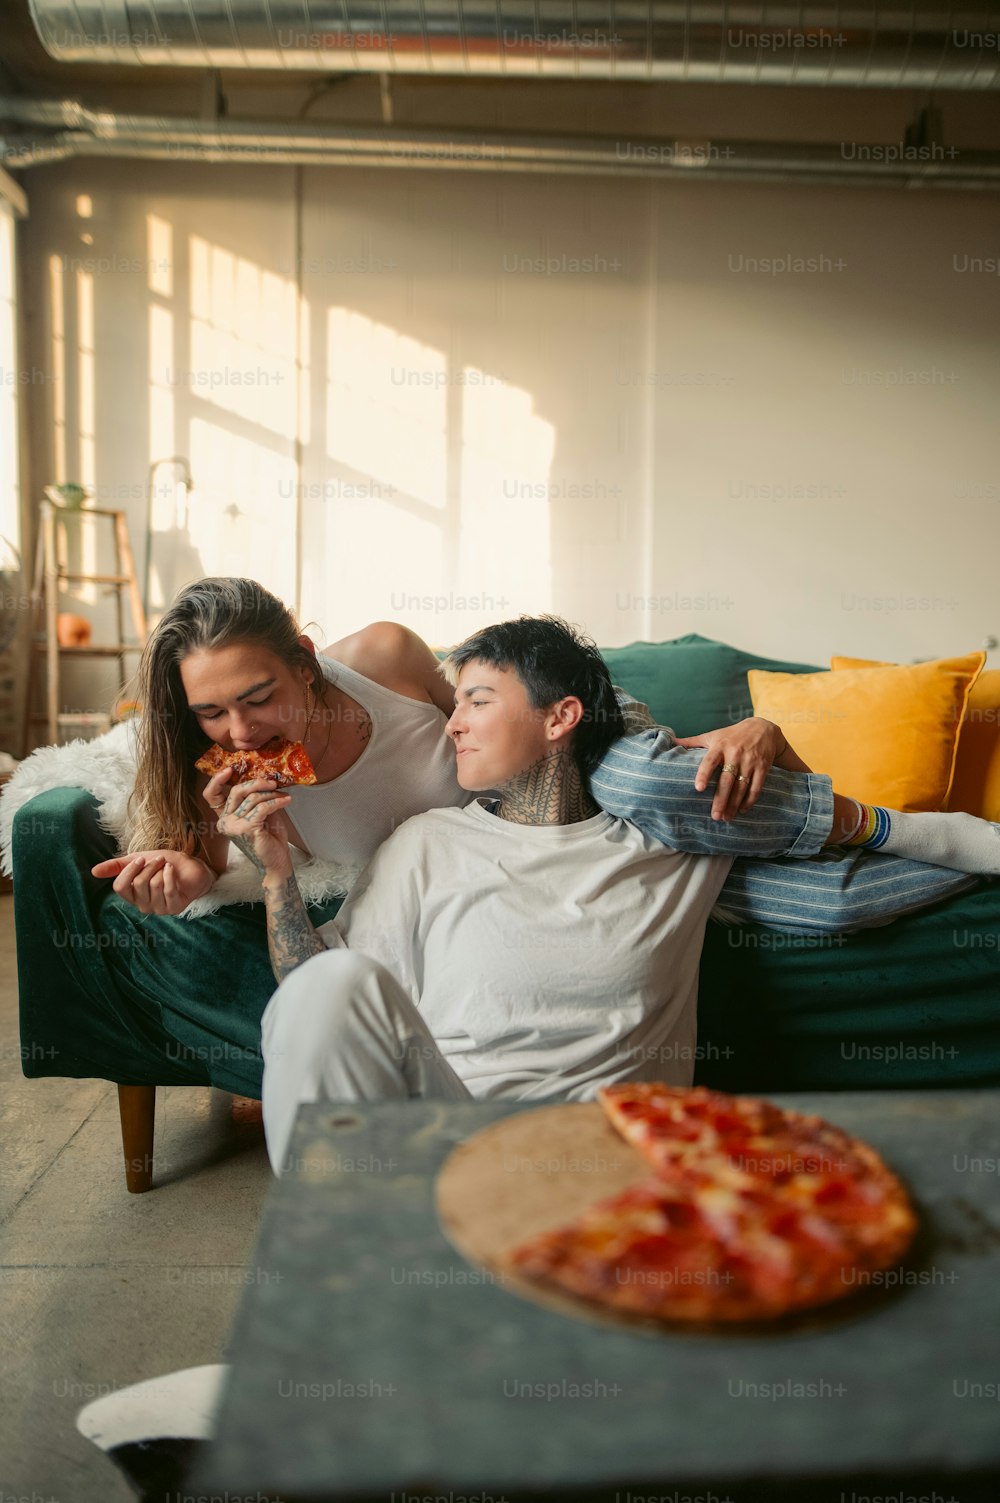 Un homme et une femme assis sur un canapé en train de manger une pizza